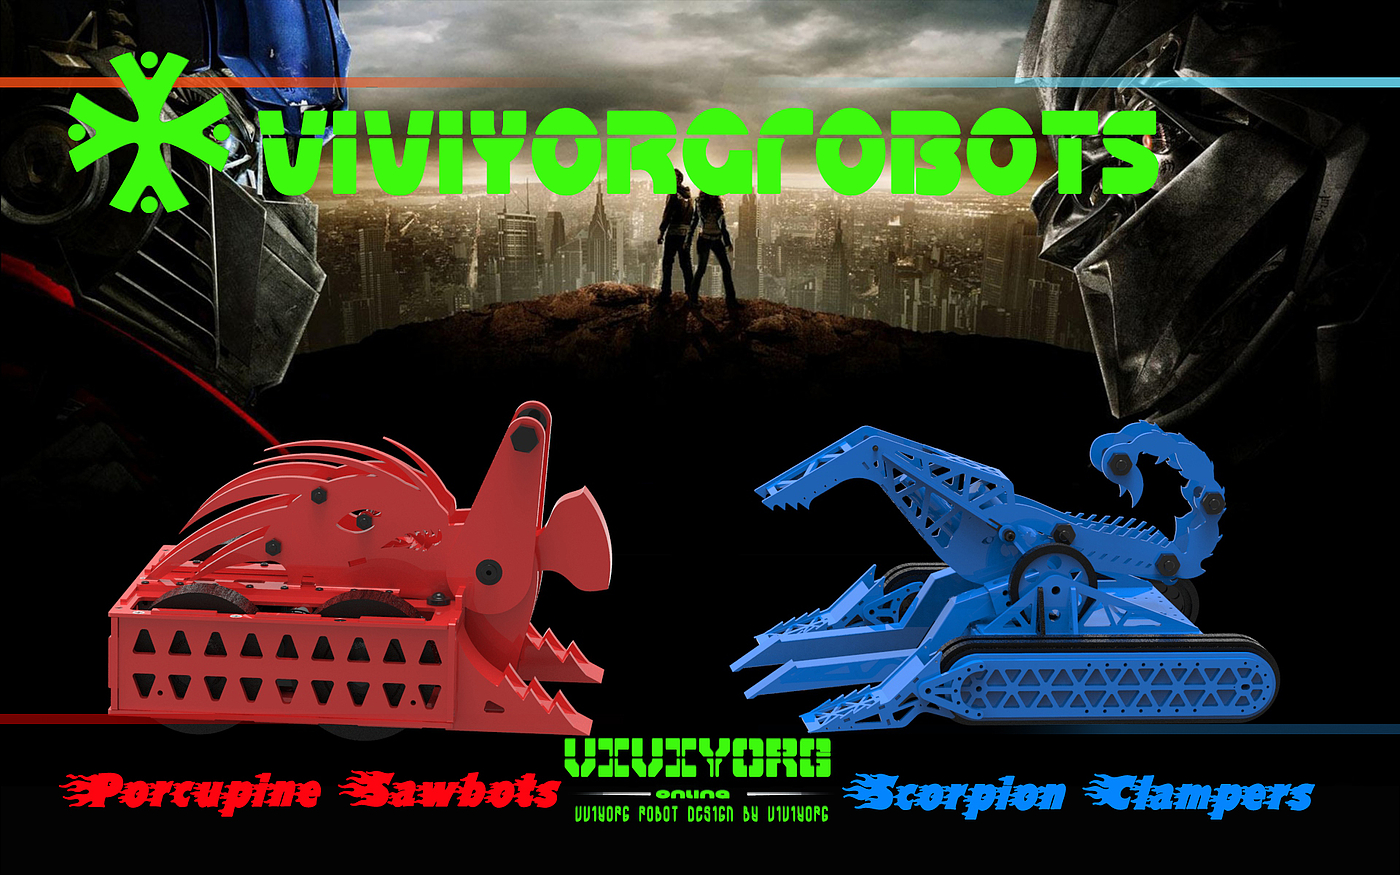 格斗机器人，Robot Wars，RobotGames，对战机器人，AGV赛车，RoboMasters，BattleBots，